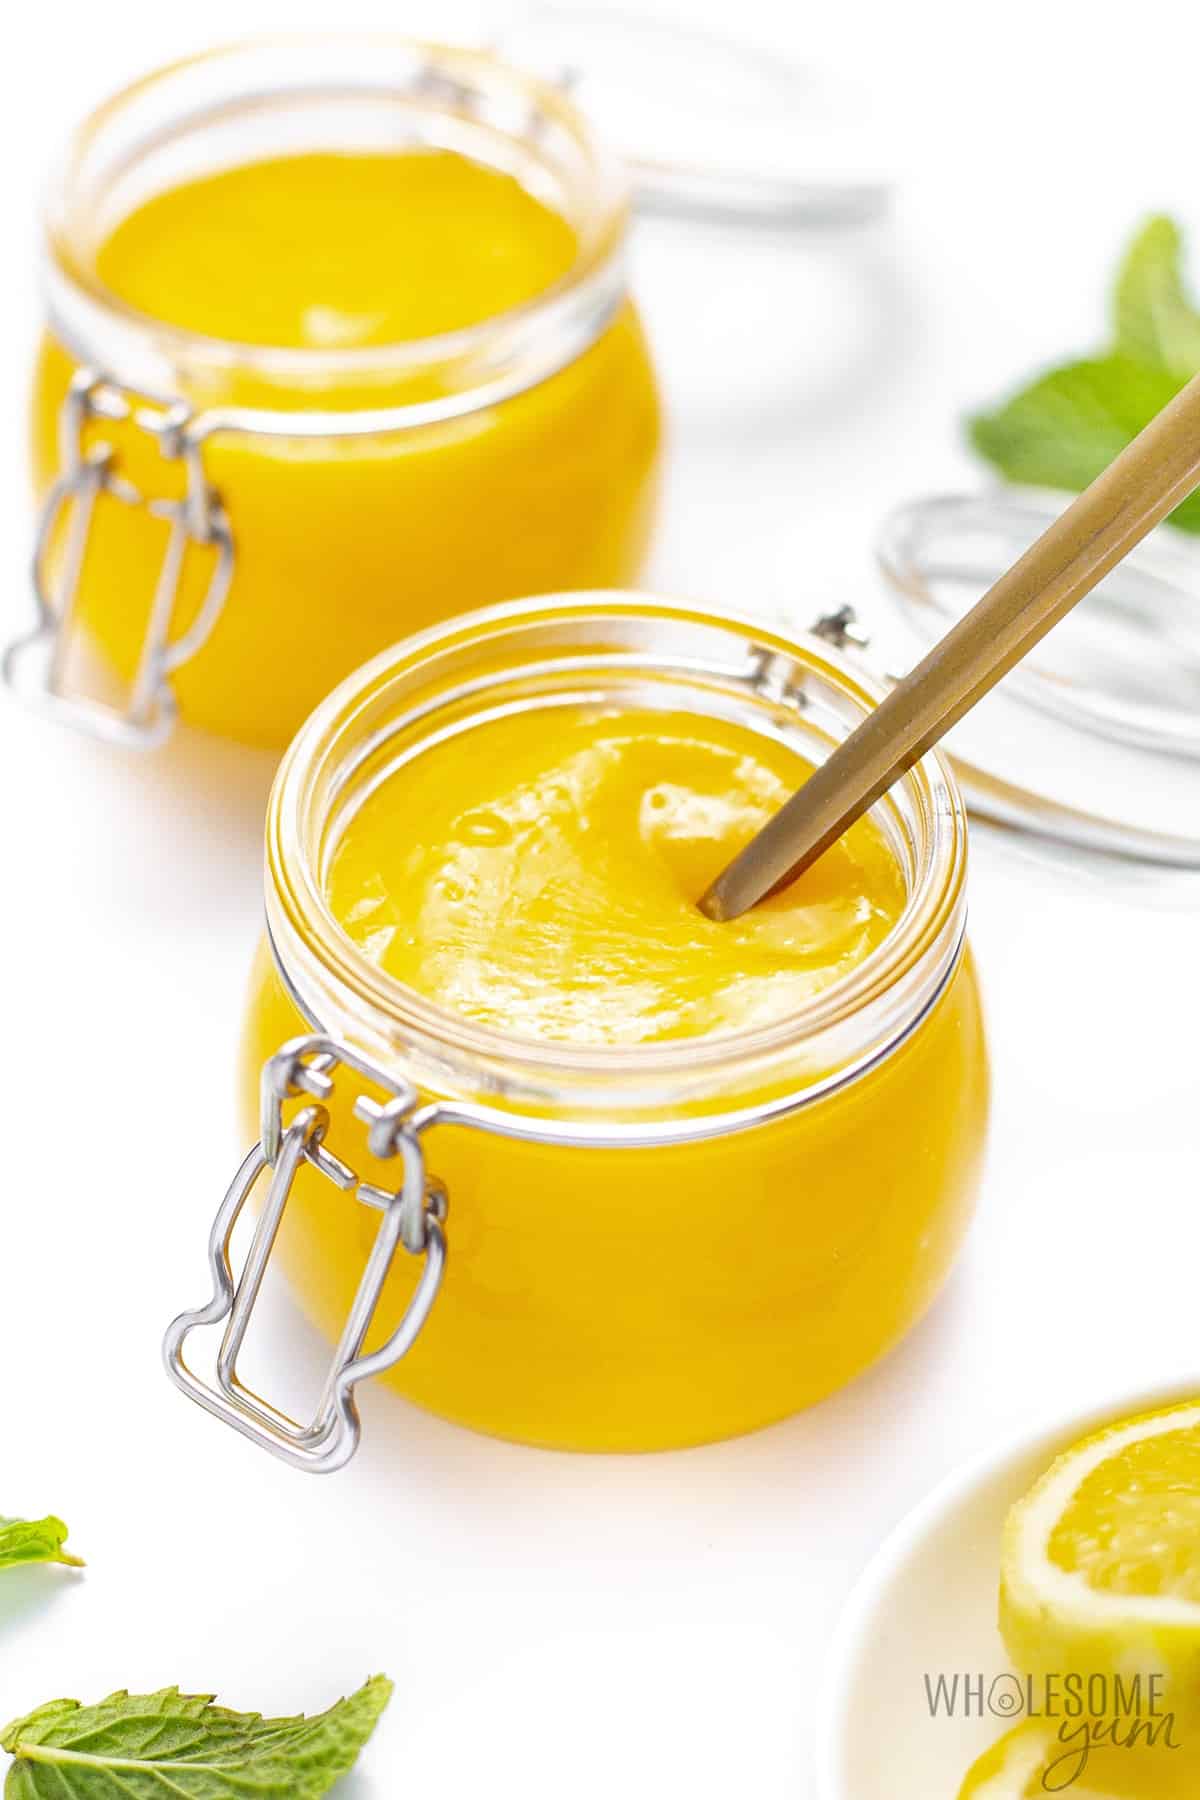 Sugar-free lemon curd in a glass jar.